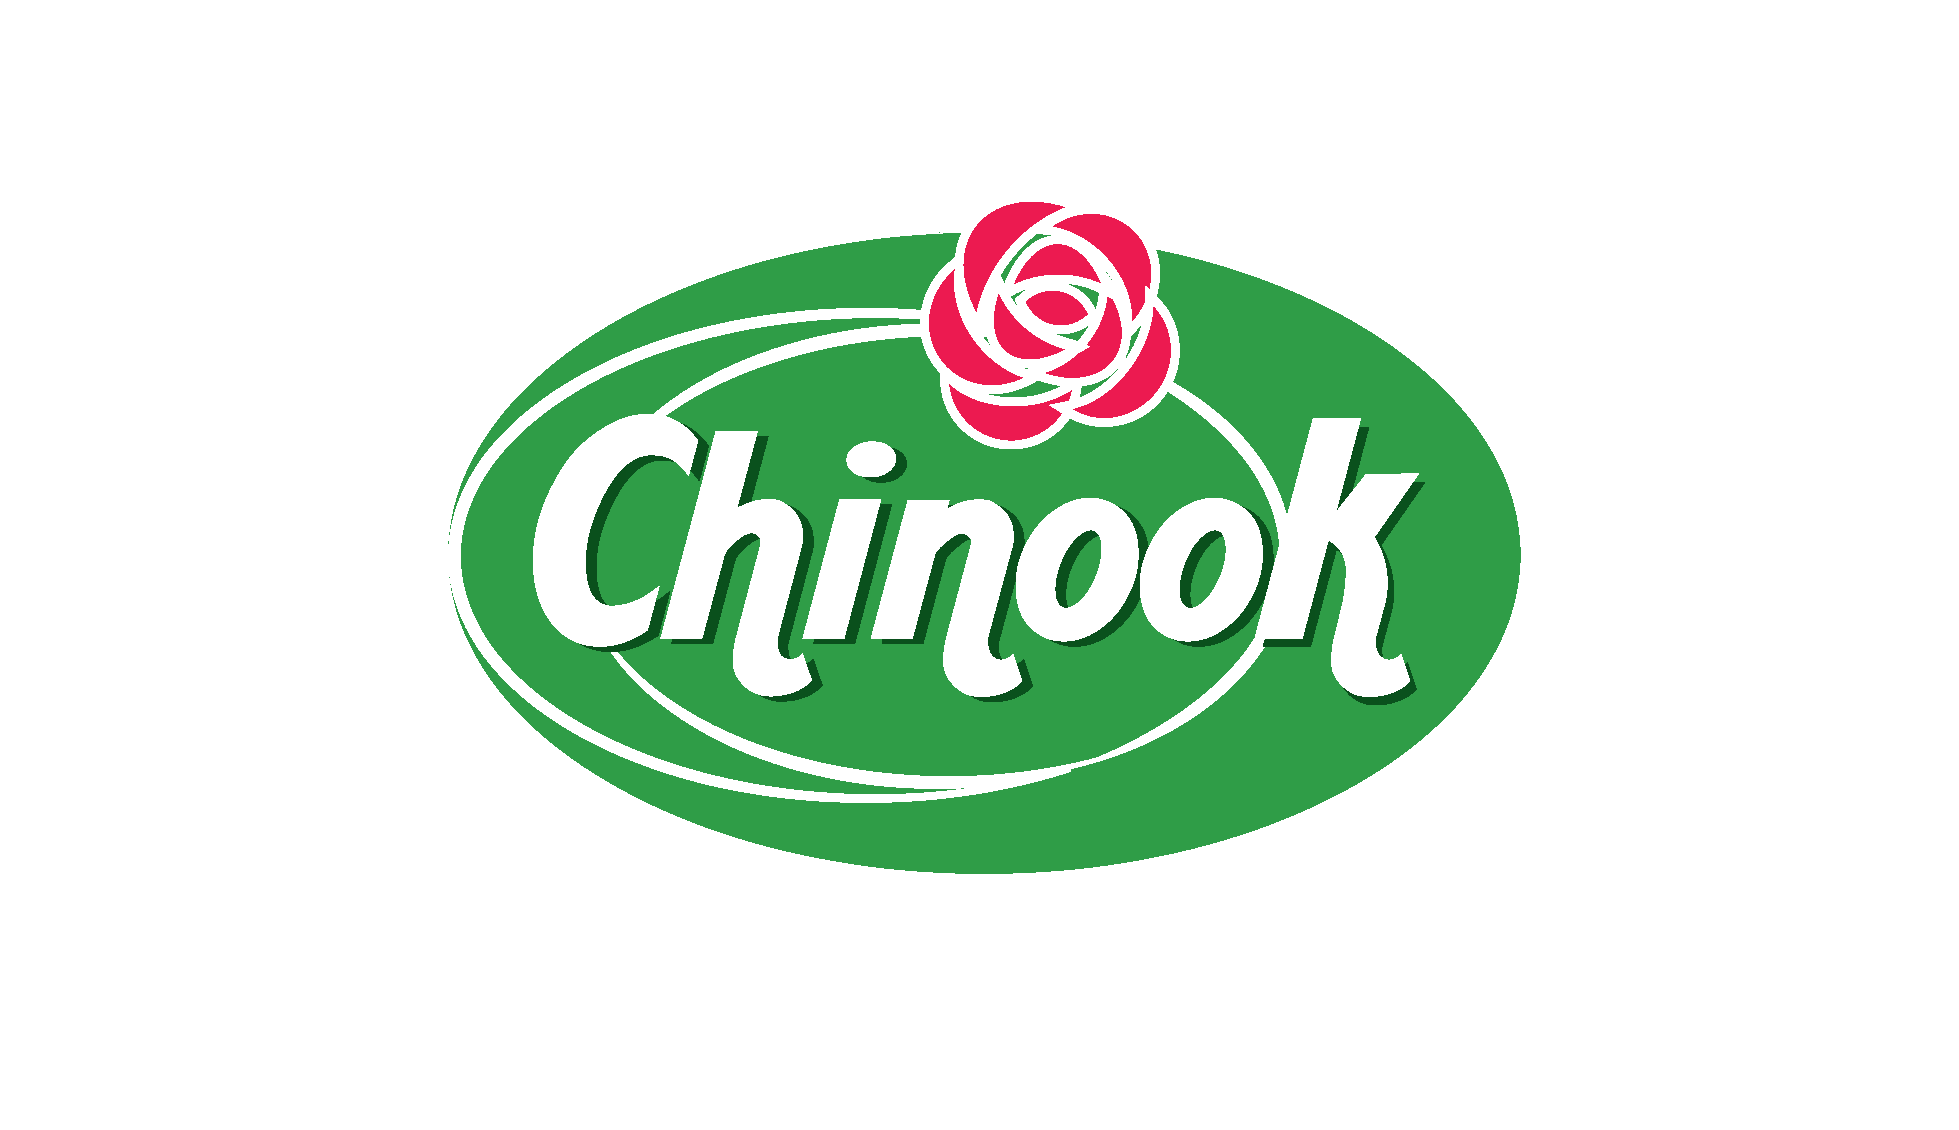 Chinook logo 1.png